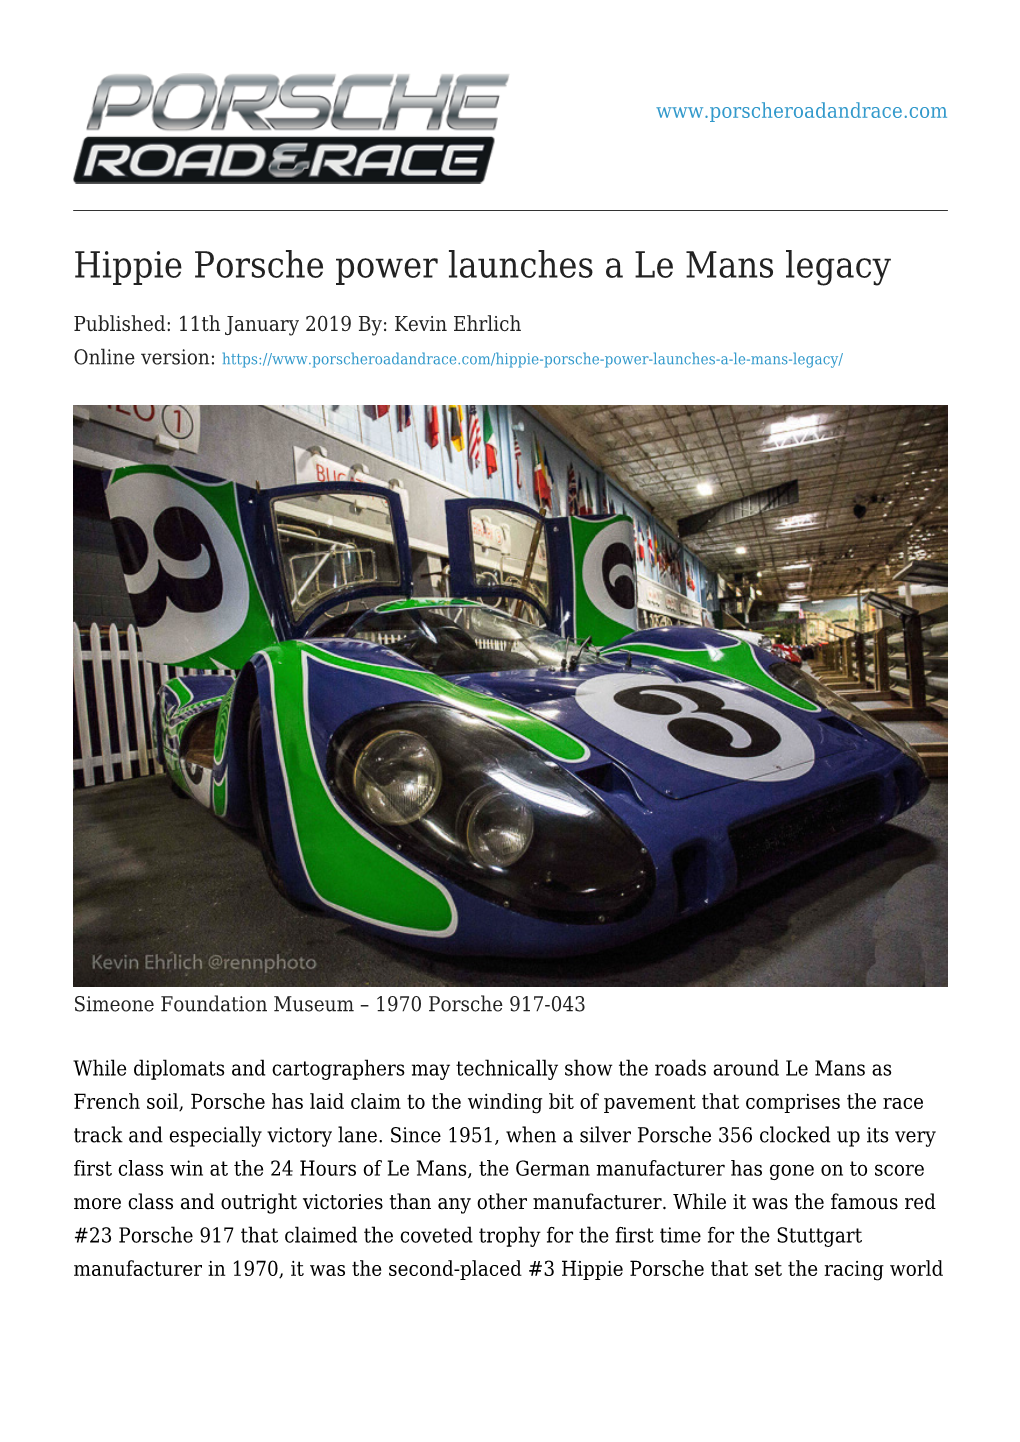 Hippie Porsche Power Launches a Le Mans Legacy